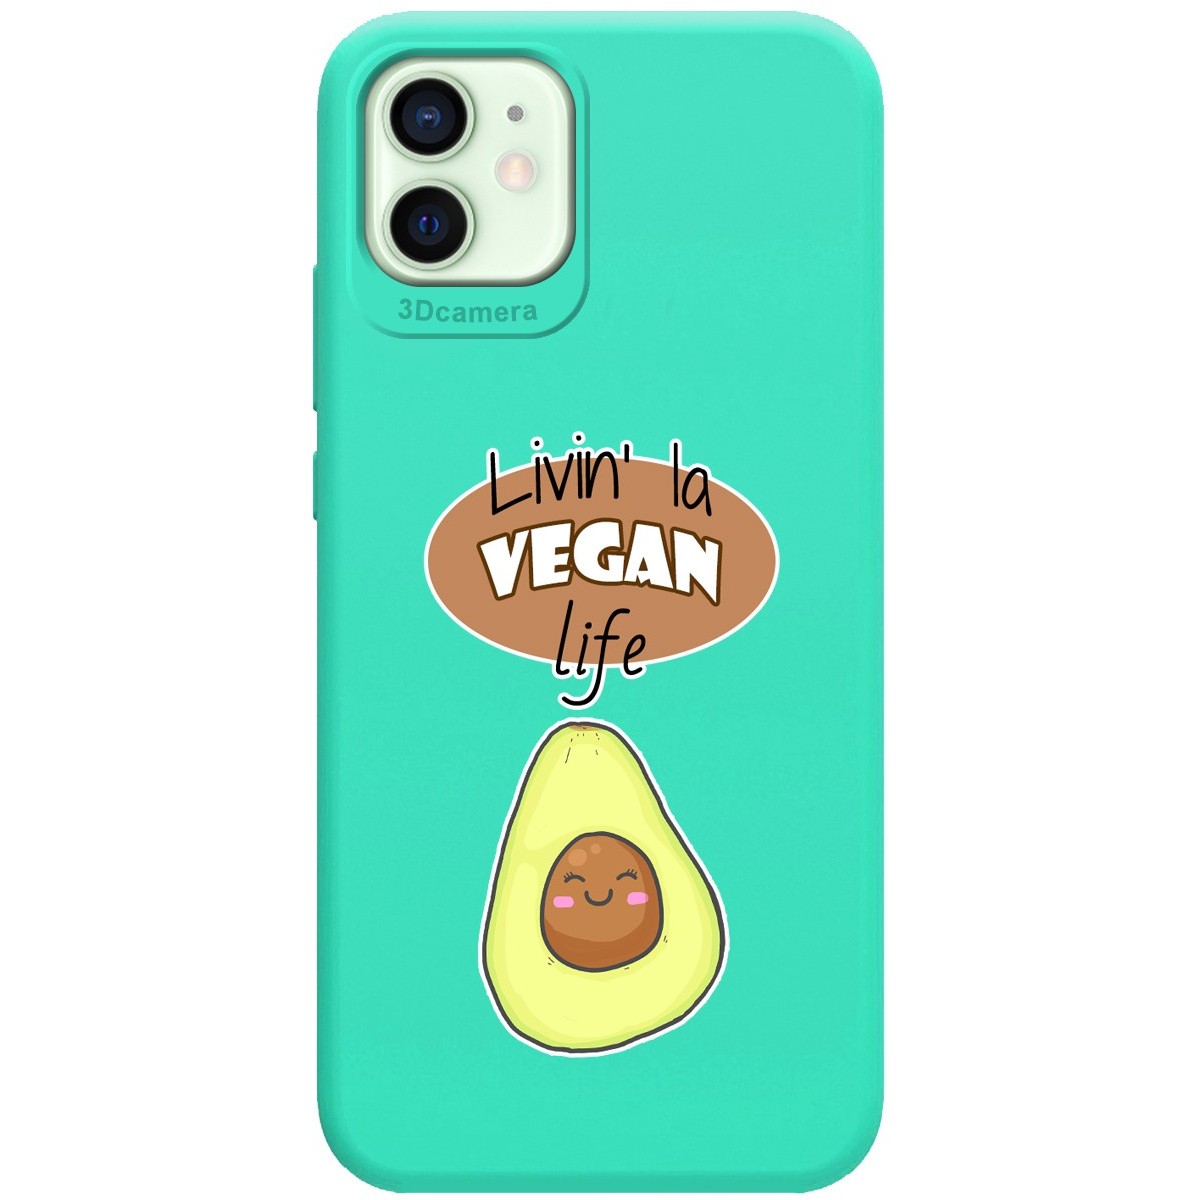 Funda Silicona Líquida Verde para Iphone 12 Mini (5.4) diseño Vegan Life Dibujos